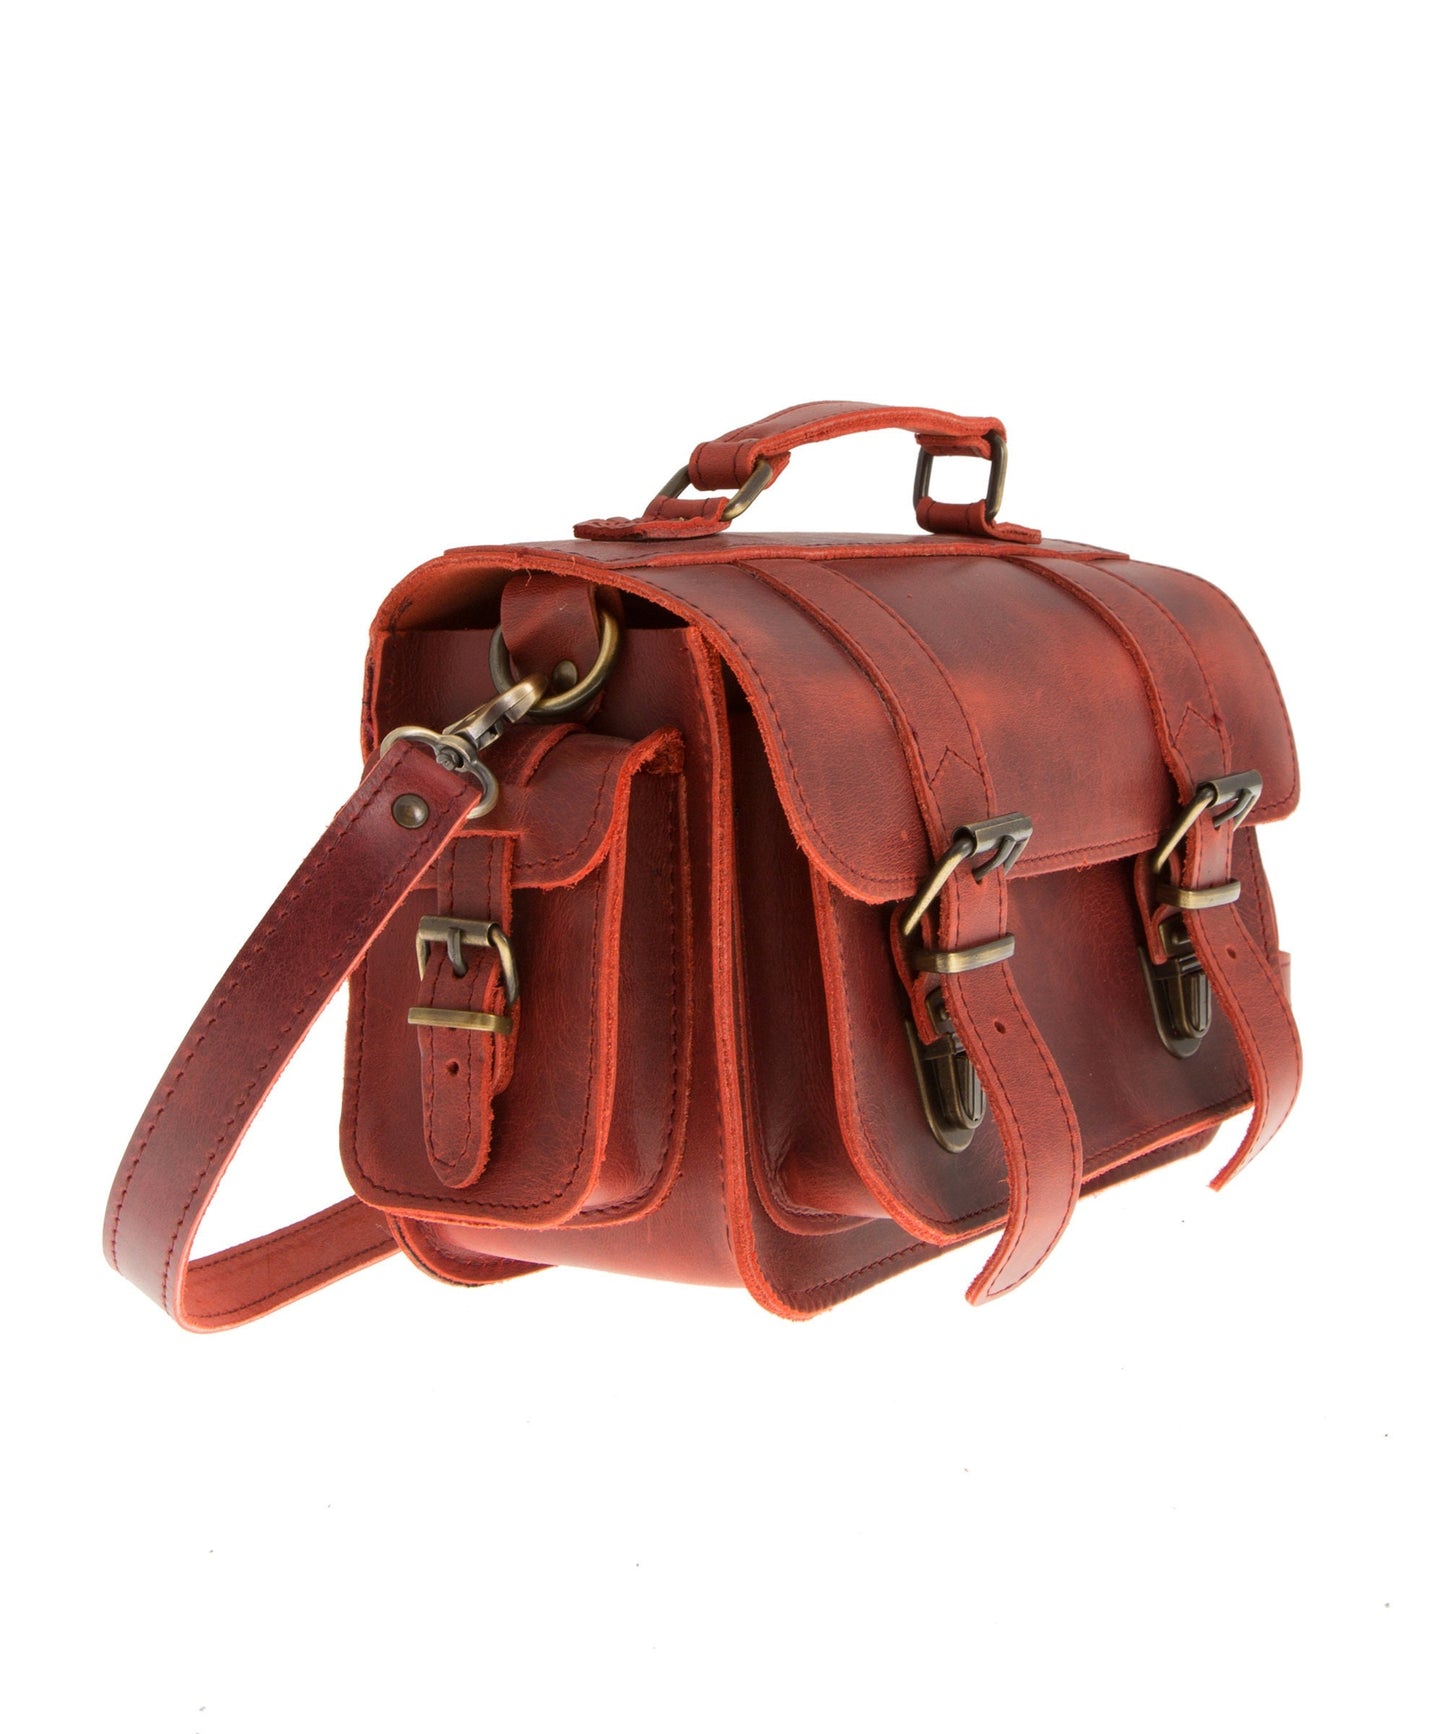 Vintage leather camera bag, Stylish large camera bag, Travel camera case, Photographer gift